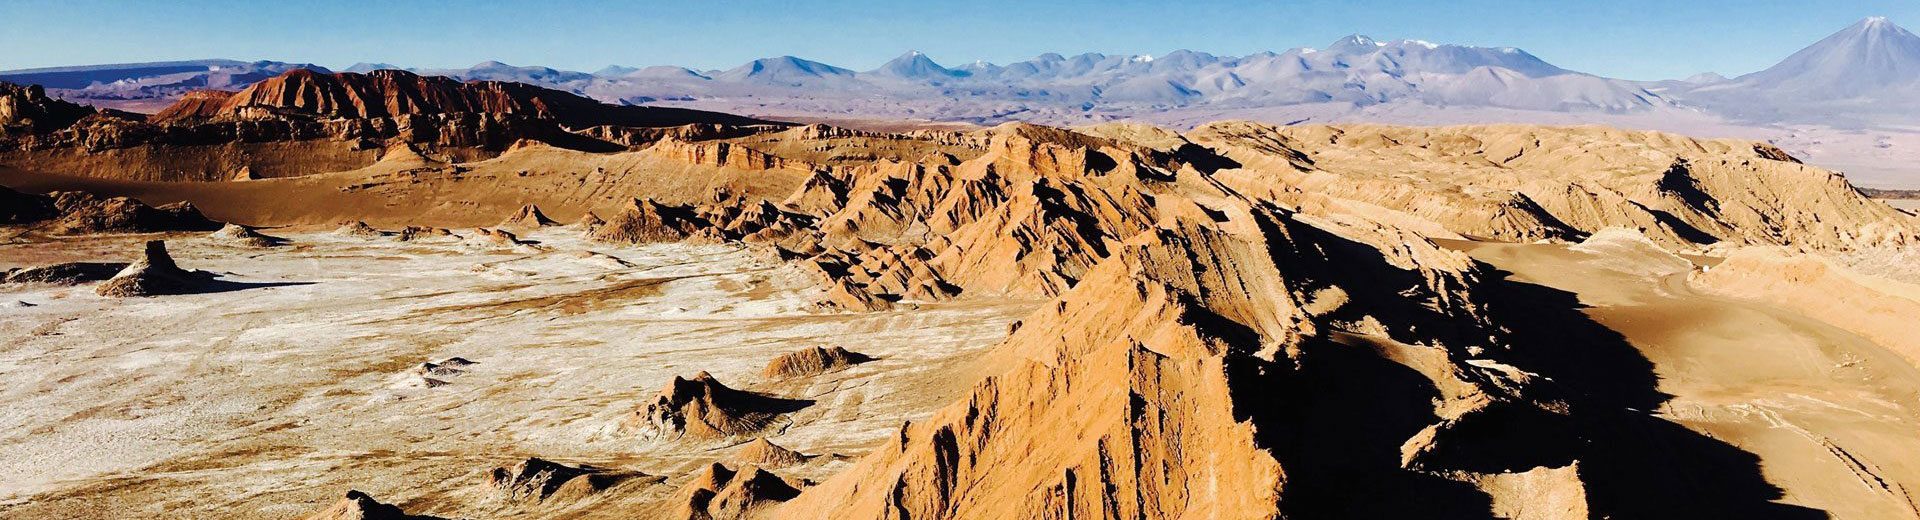 Tudo sobre o Atacama: Um lugar paradisíaco no Chile